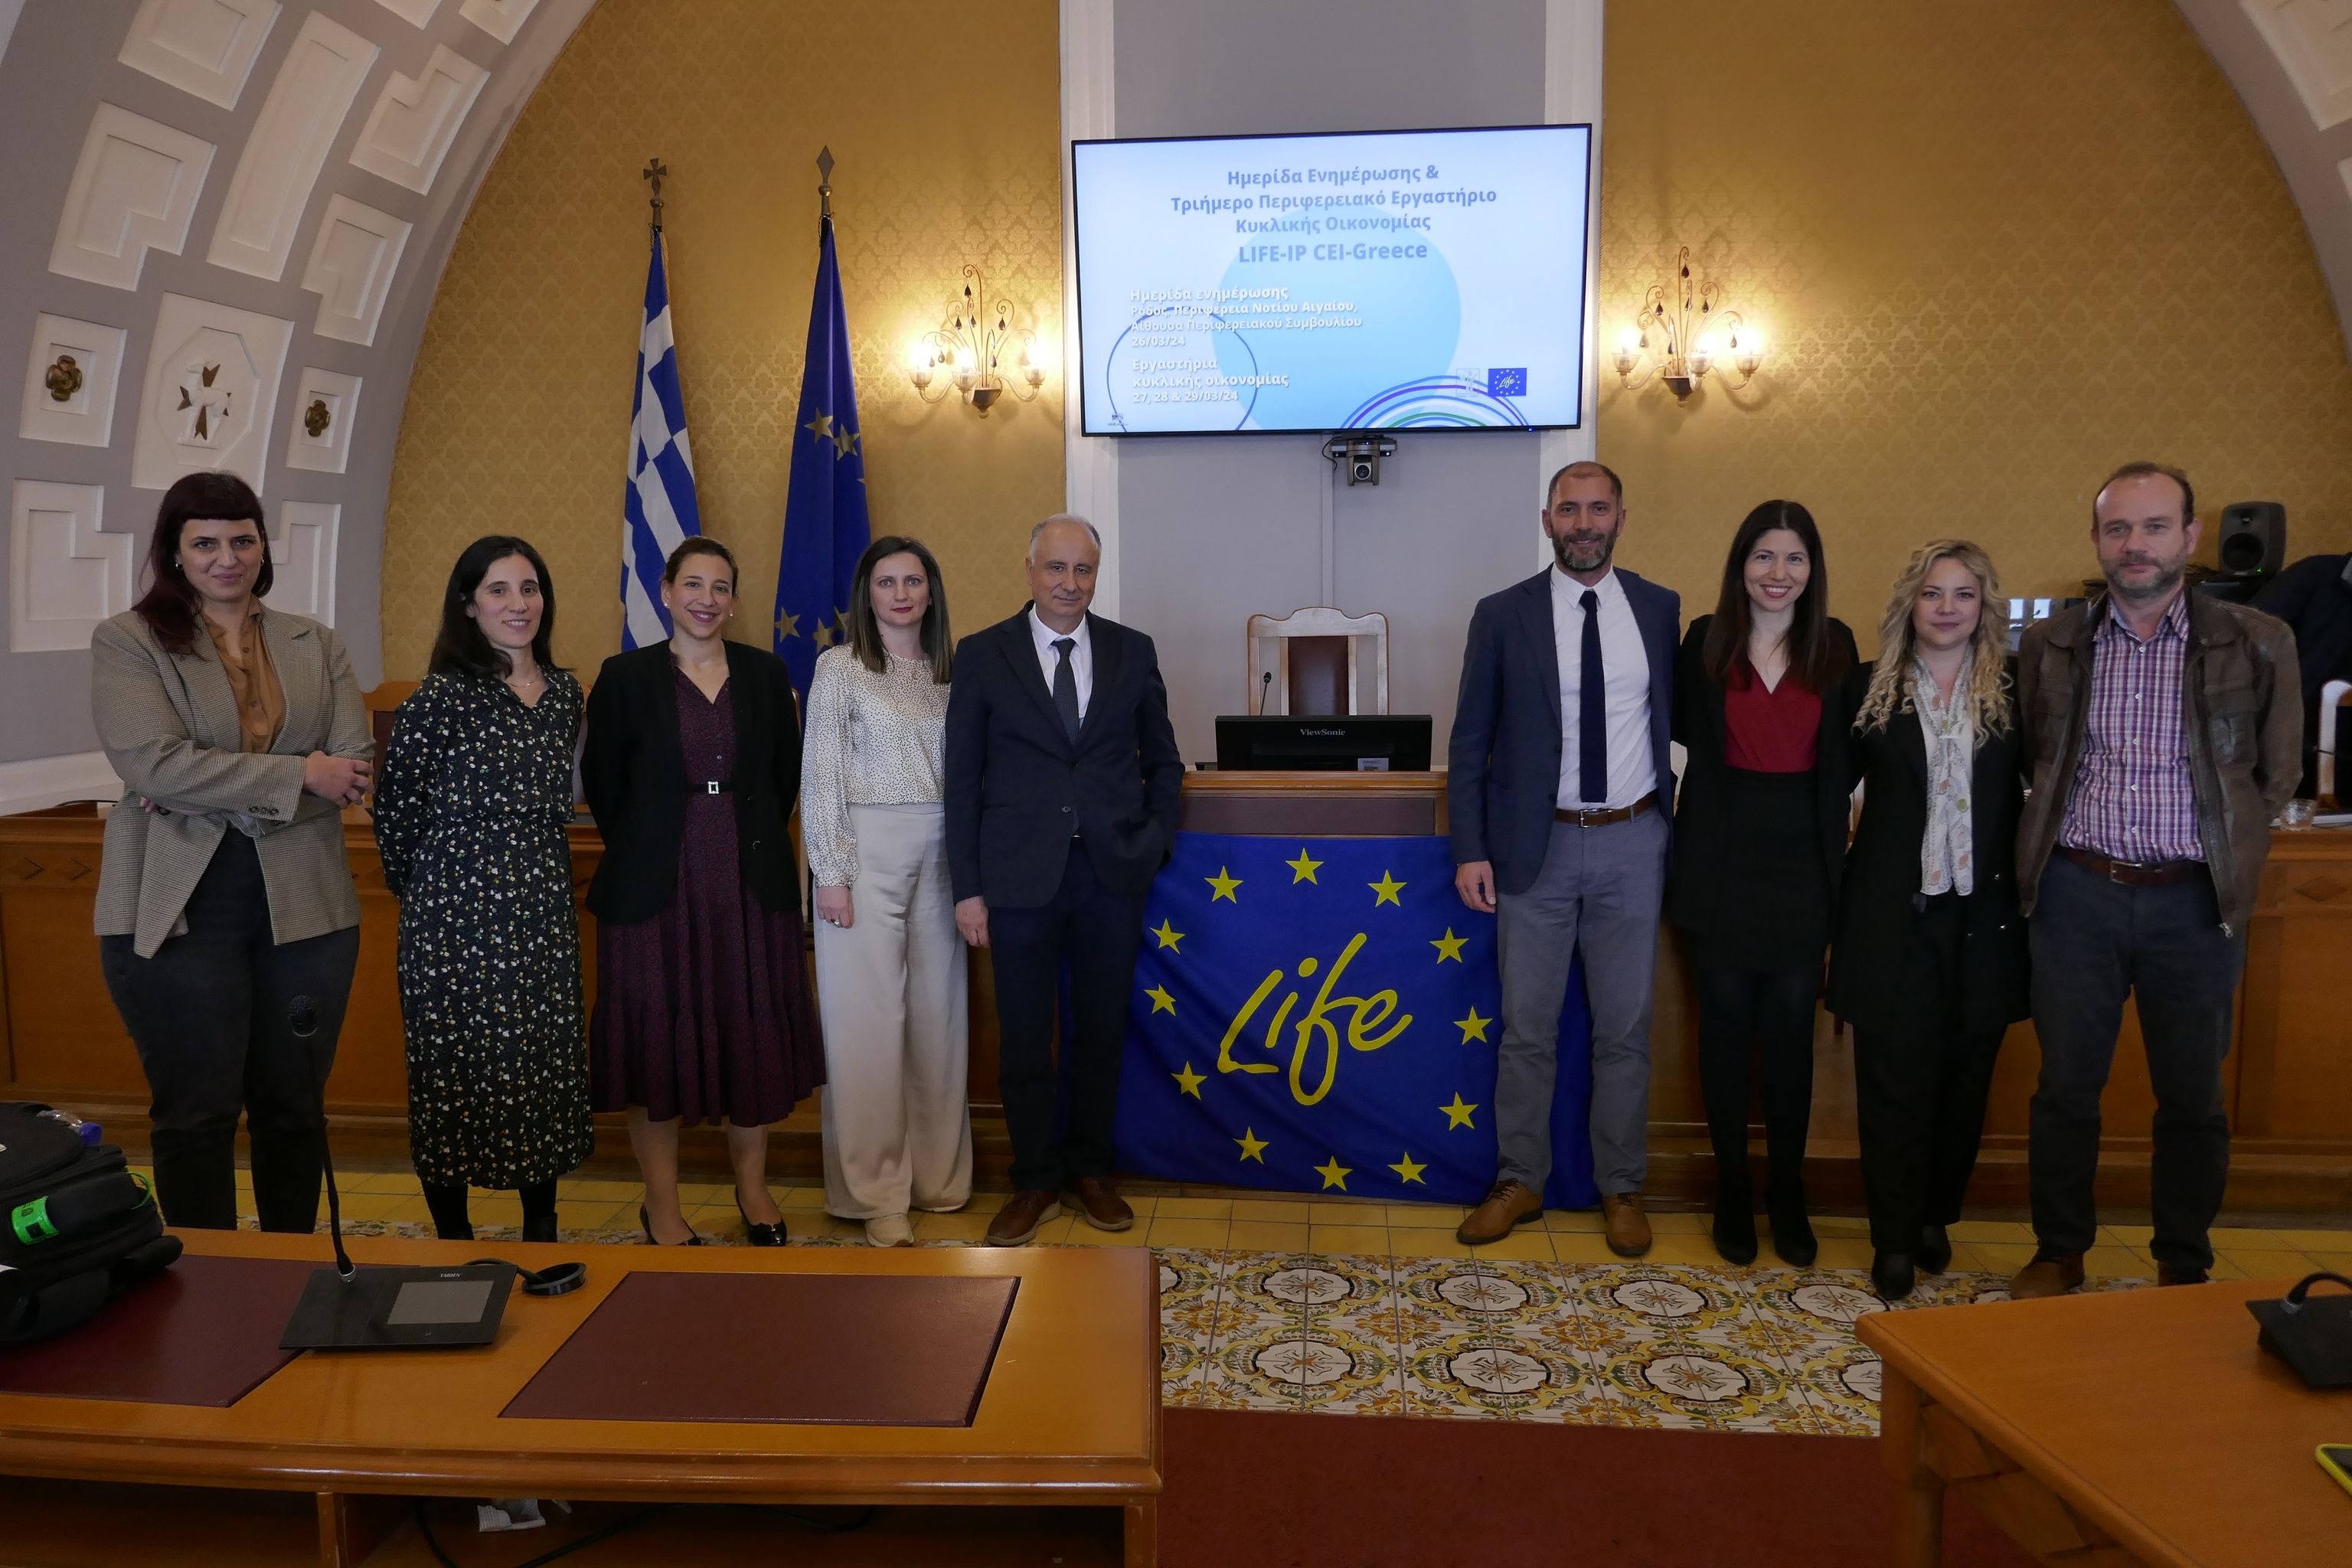 Οι παρουσιάσεις της Ημερίδας Ενημέρωσης για την Κυκλική Οικονομία στην Περιφέρεια Νοτίου Αιγαίου στο πλαίσιο του Έργου LIFE-IP CEI-Greece